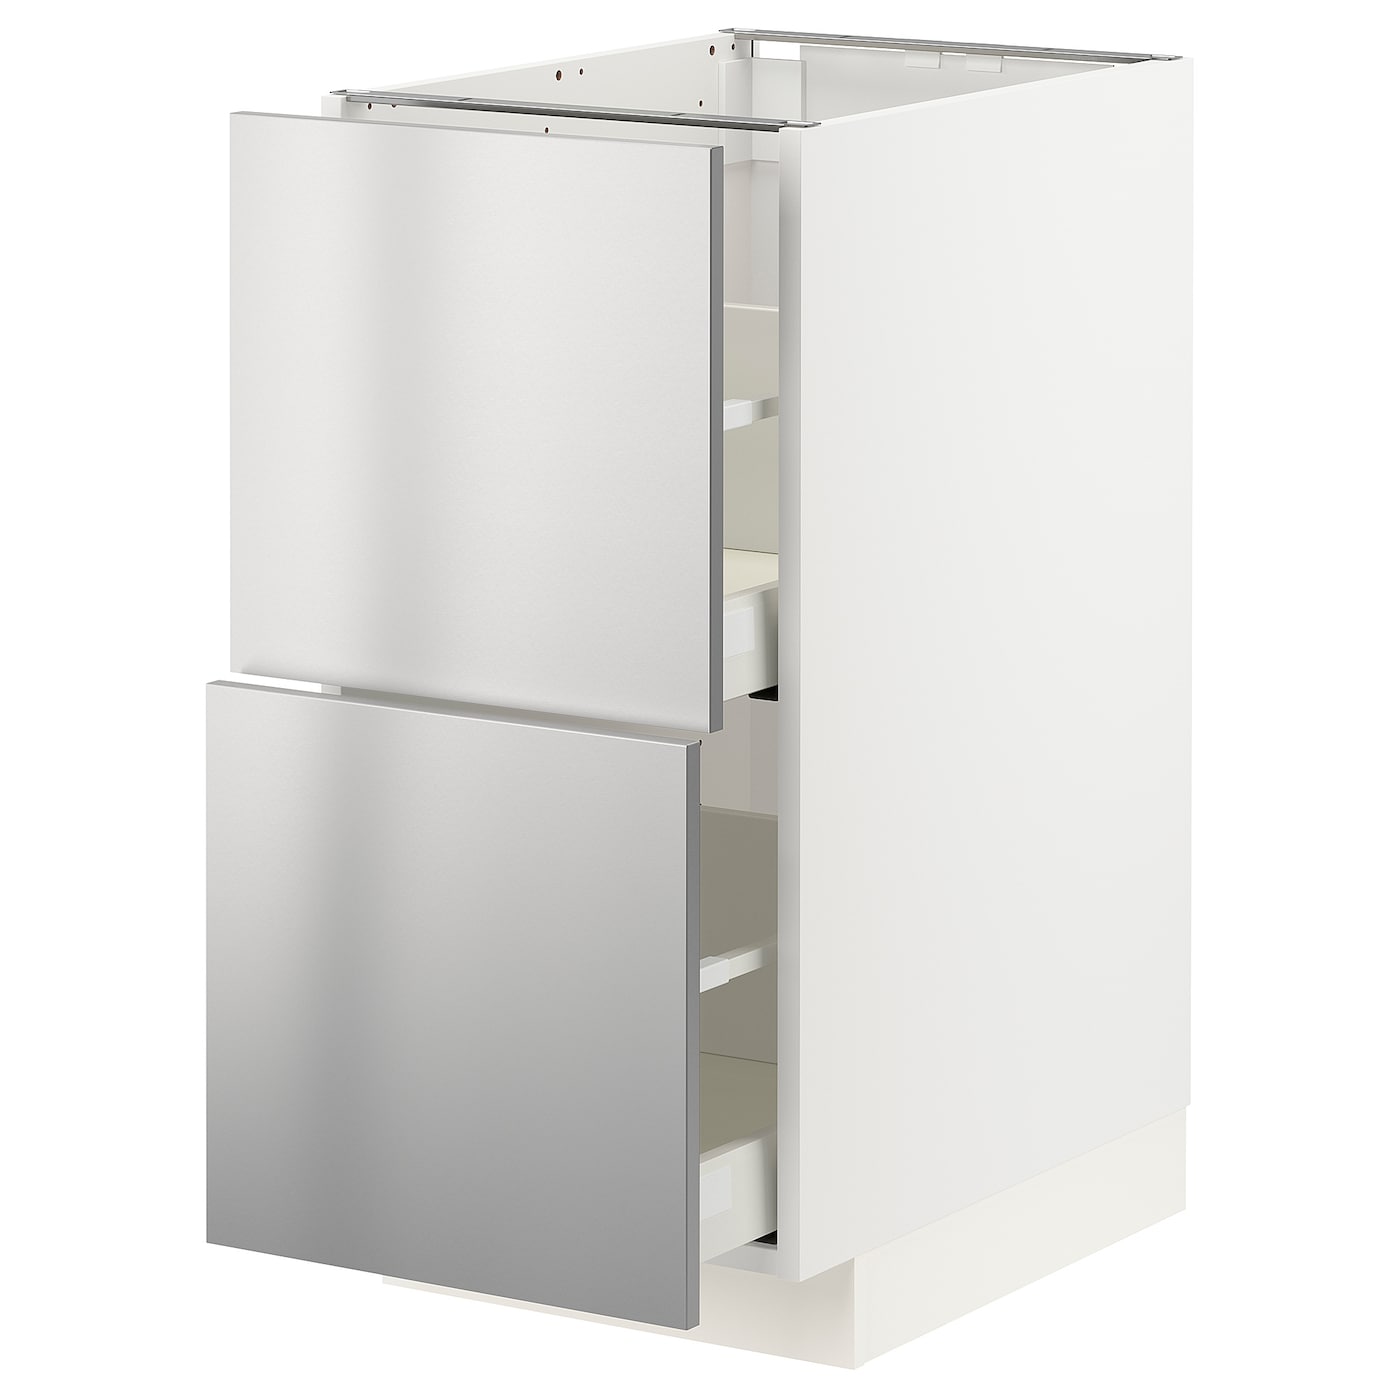 Напольный кухонный шкаф  - IKEA METOD MAXIMERA, 88x61,6x40см, белый/светло-серый, МЕТОД МАКСИМЕРА ИКЕА